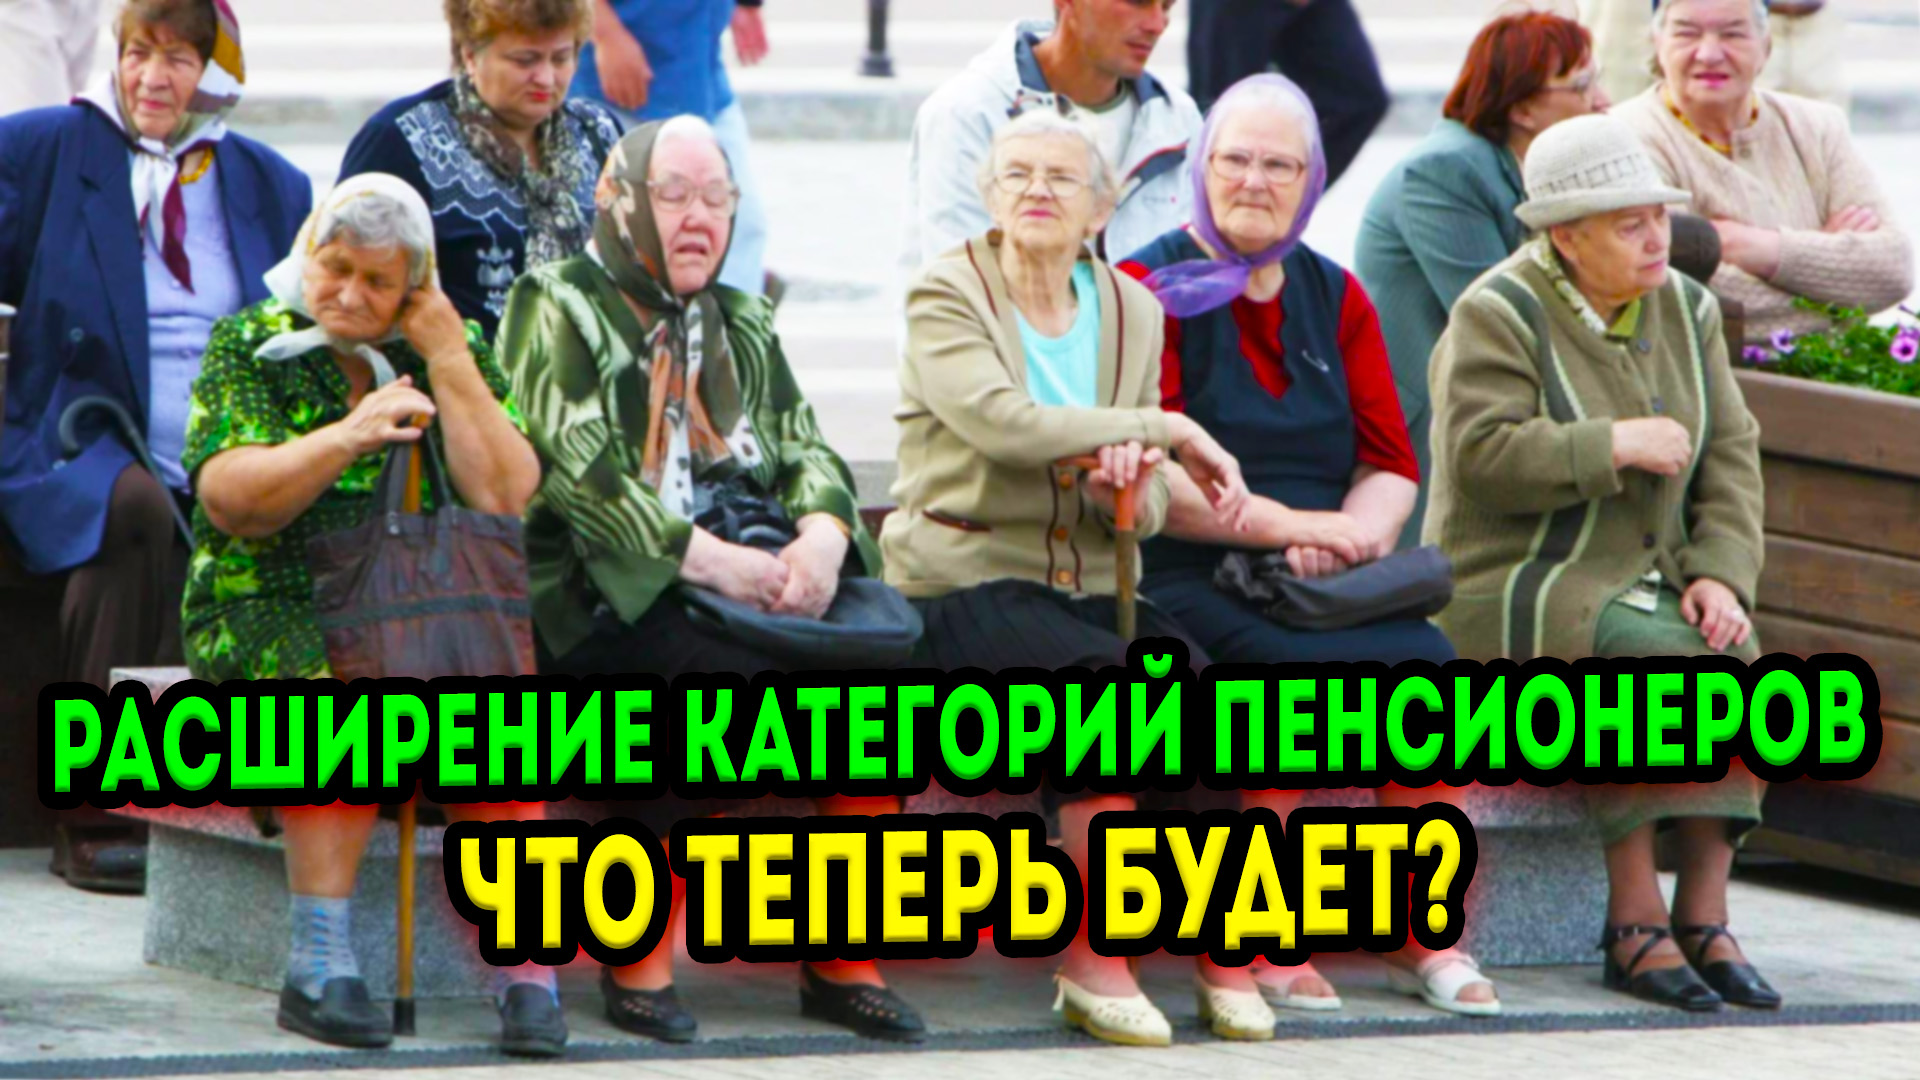 Категории пенсионеров в России. Смешные пенсионеры. Пенсионеры за пенсией. Приколы про пенсионеров.